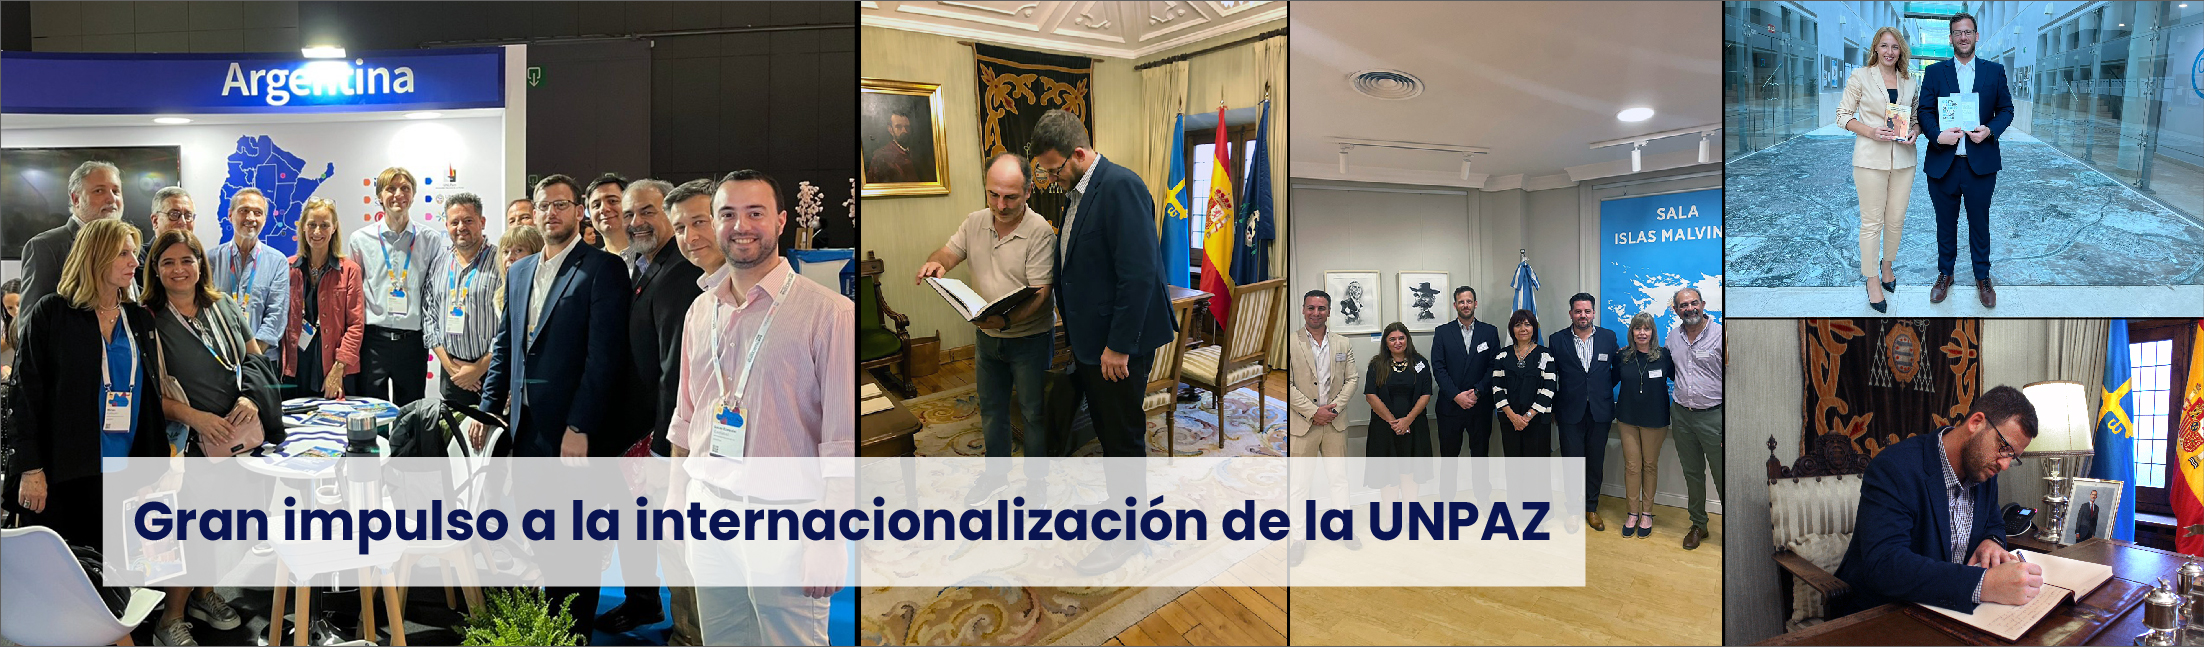 Gran impulso a la internacionalización de la UNPAZ